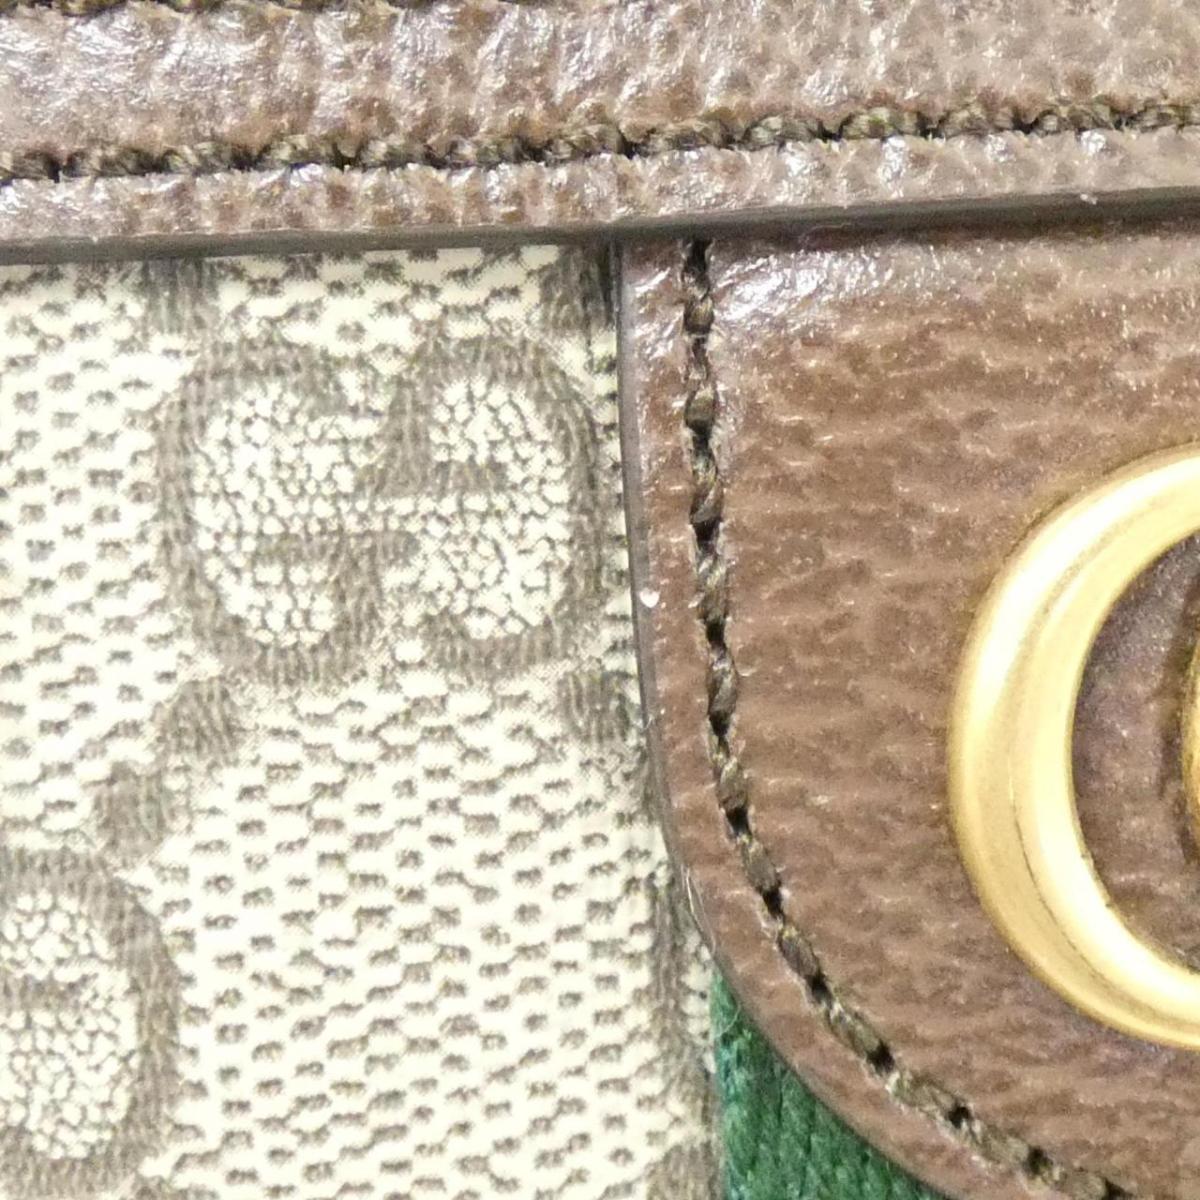 Gucci OPHIDIA Shoulder Bag 598127 96IWT